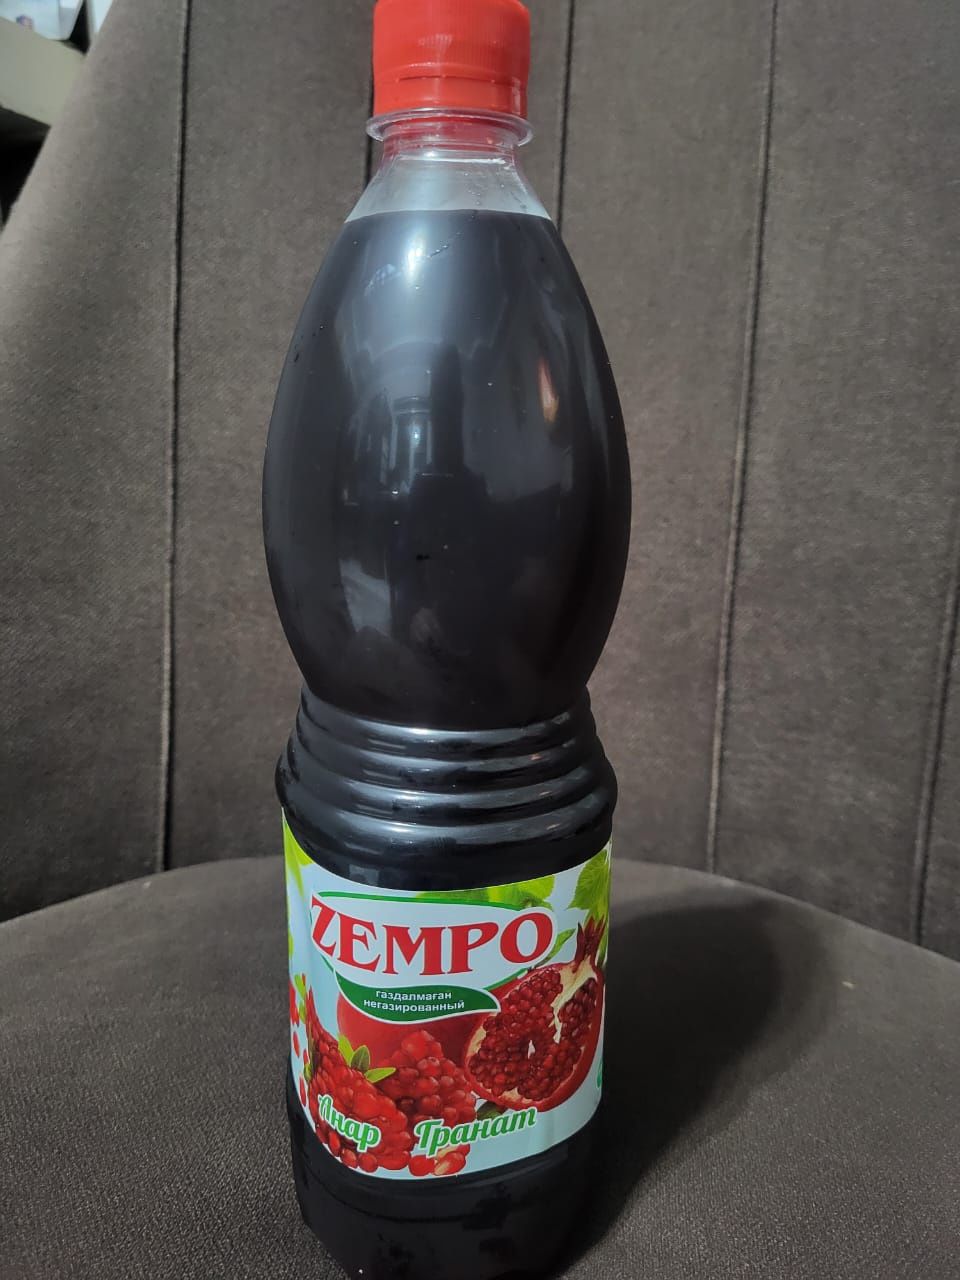 Продам оптом соки ZEMPO цена 400тг. Оптом и 500тг. В розницу